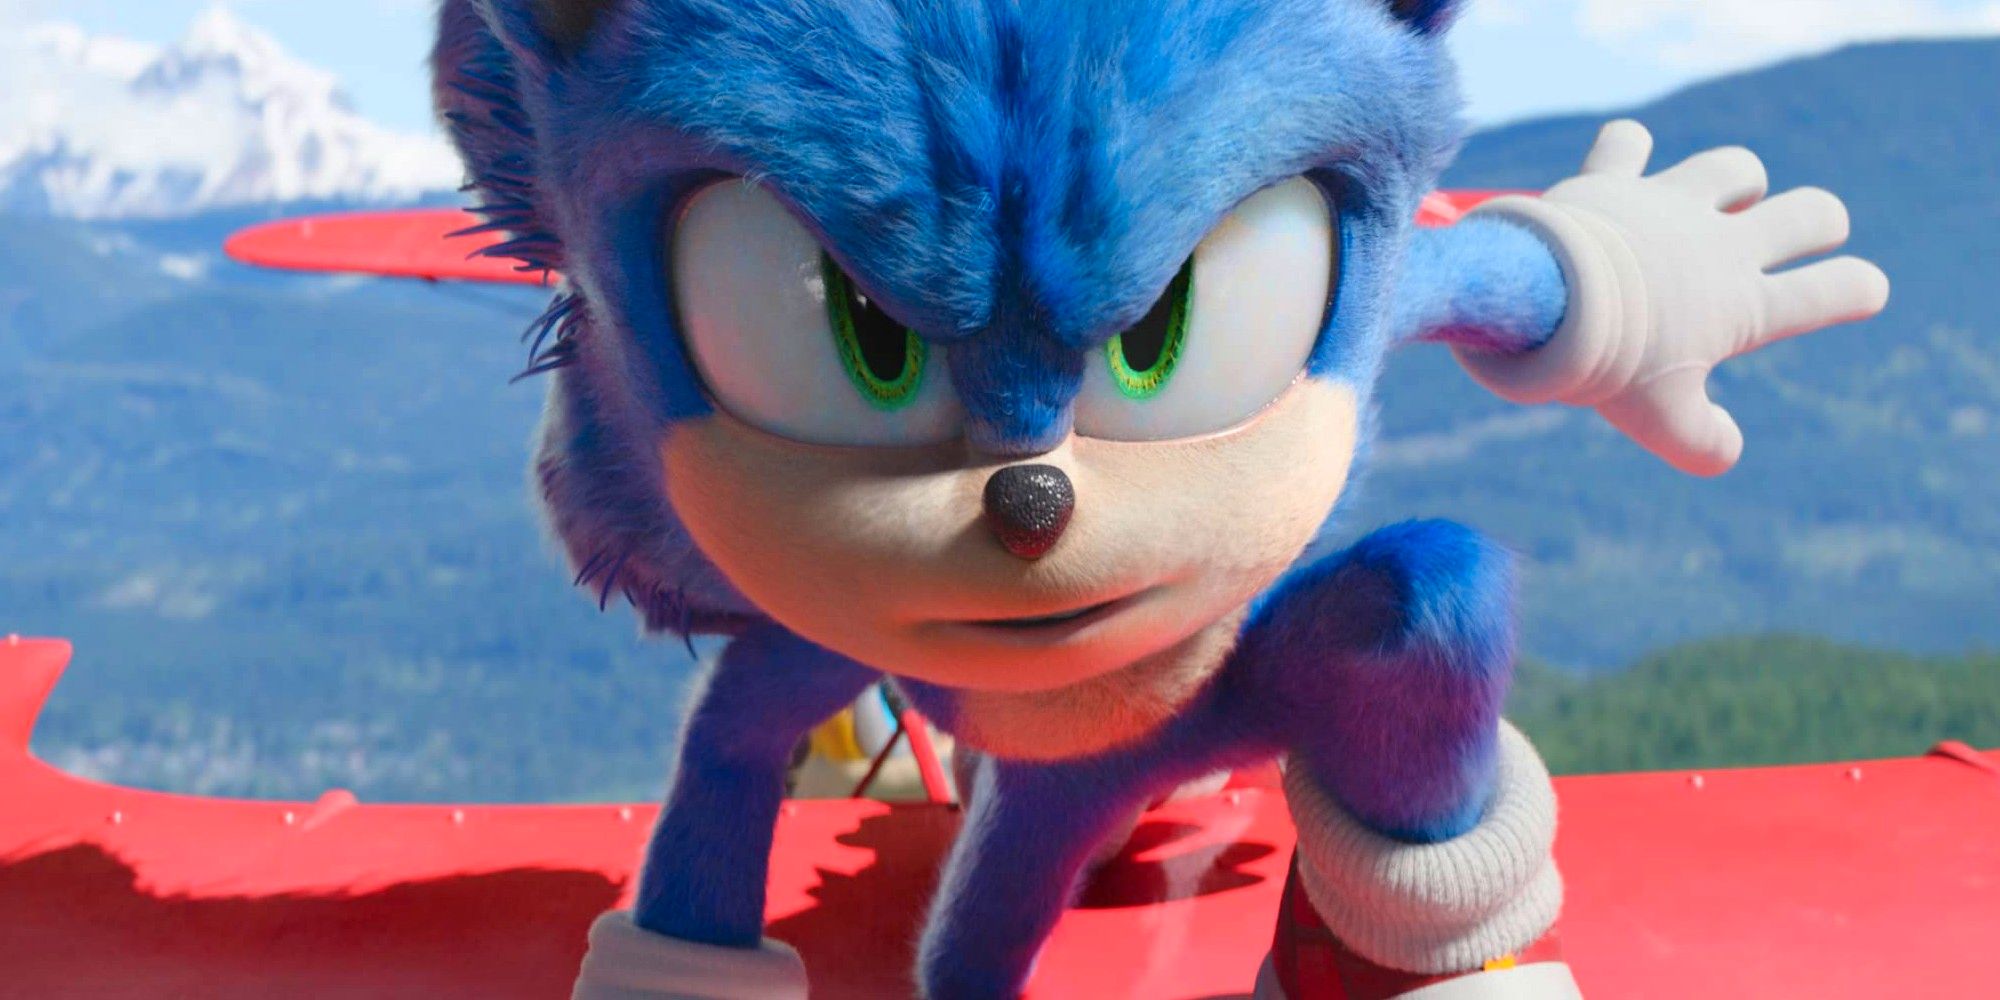 Revisión de Sonic The Hedgehog 2: Knuckles se roba el espectáculo en una secuela divertida pero rellena